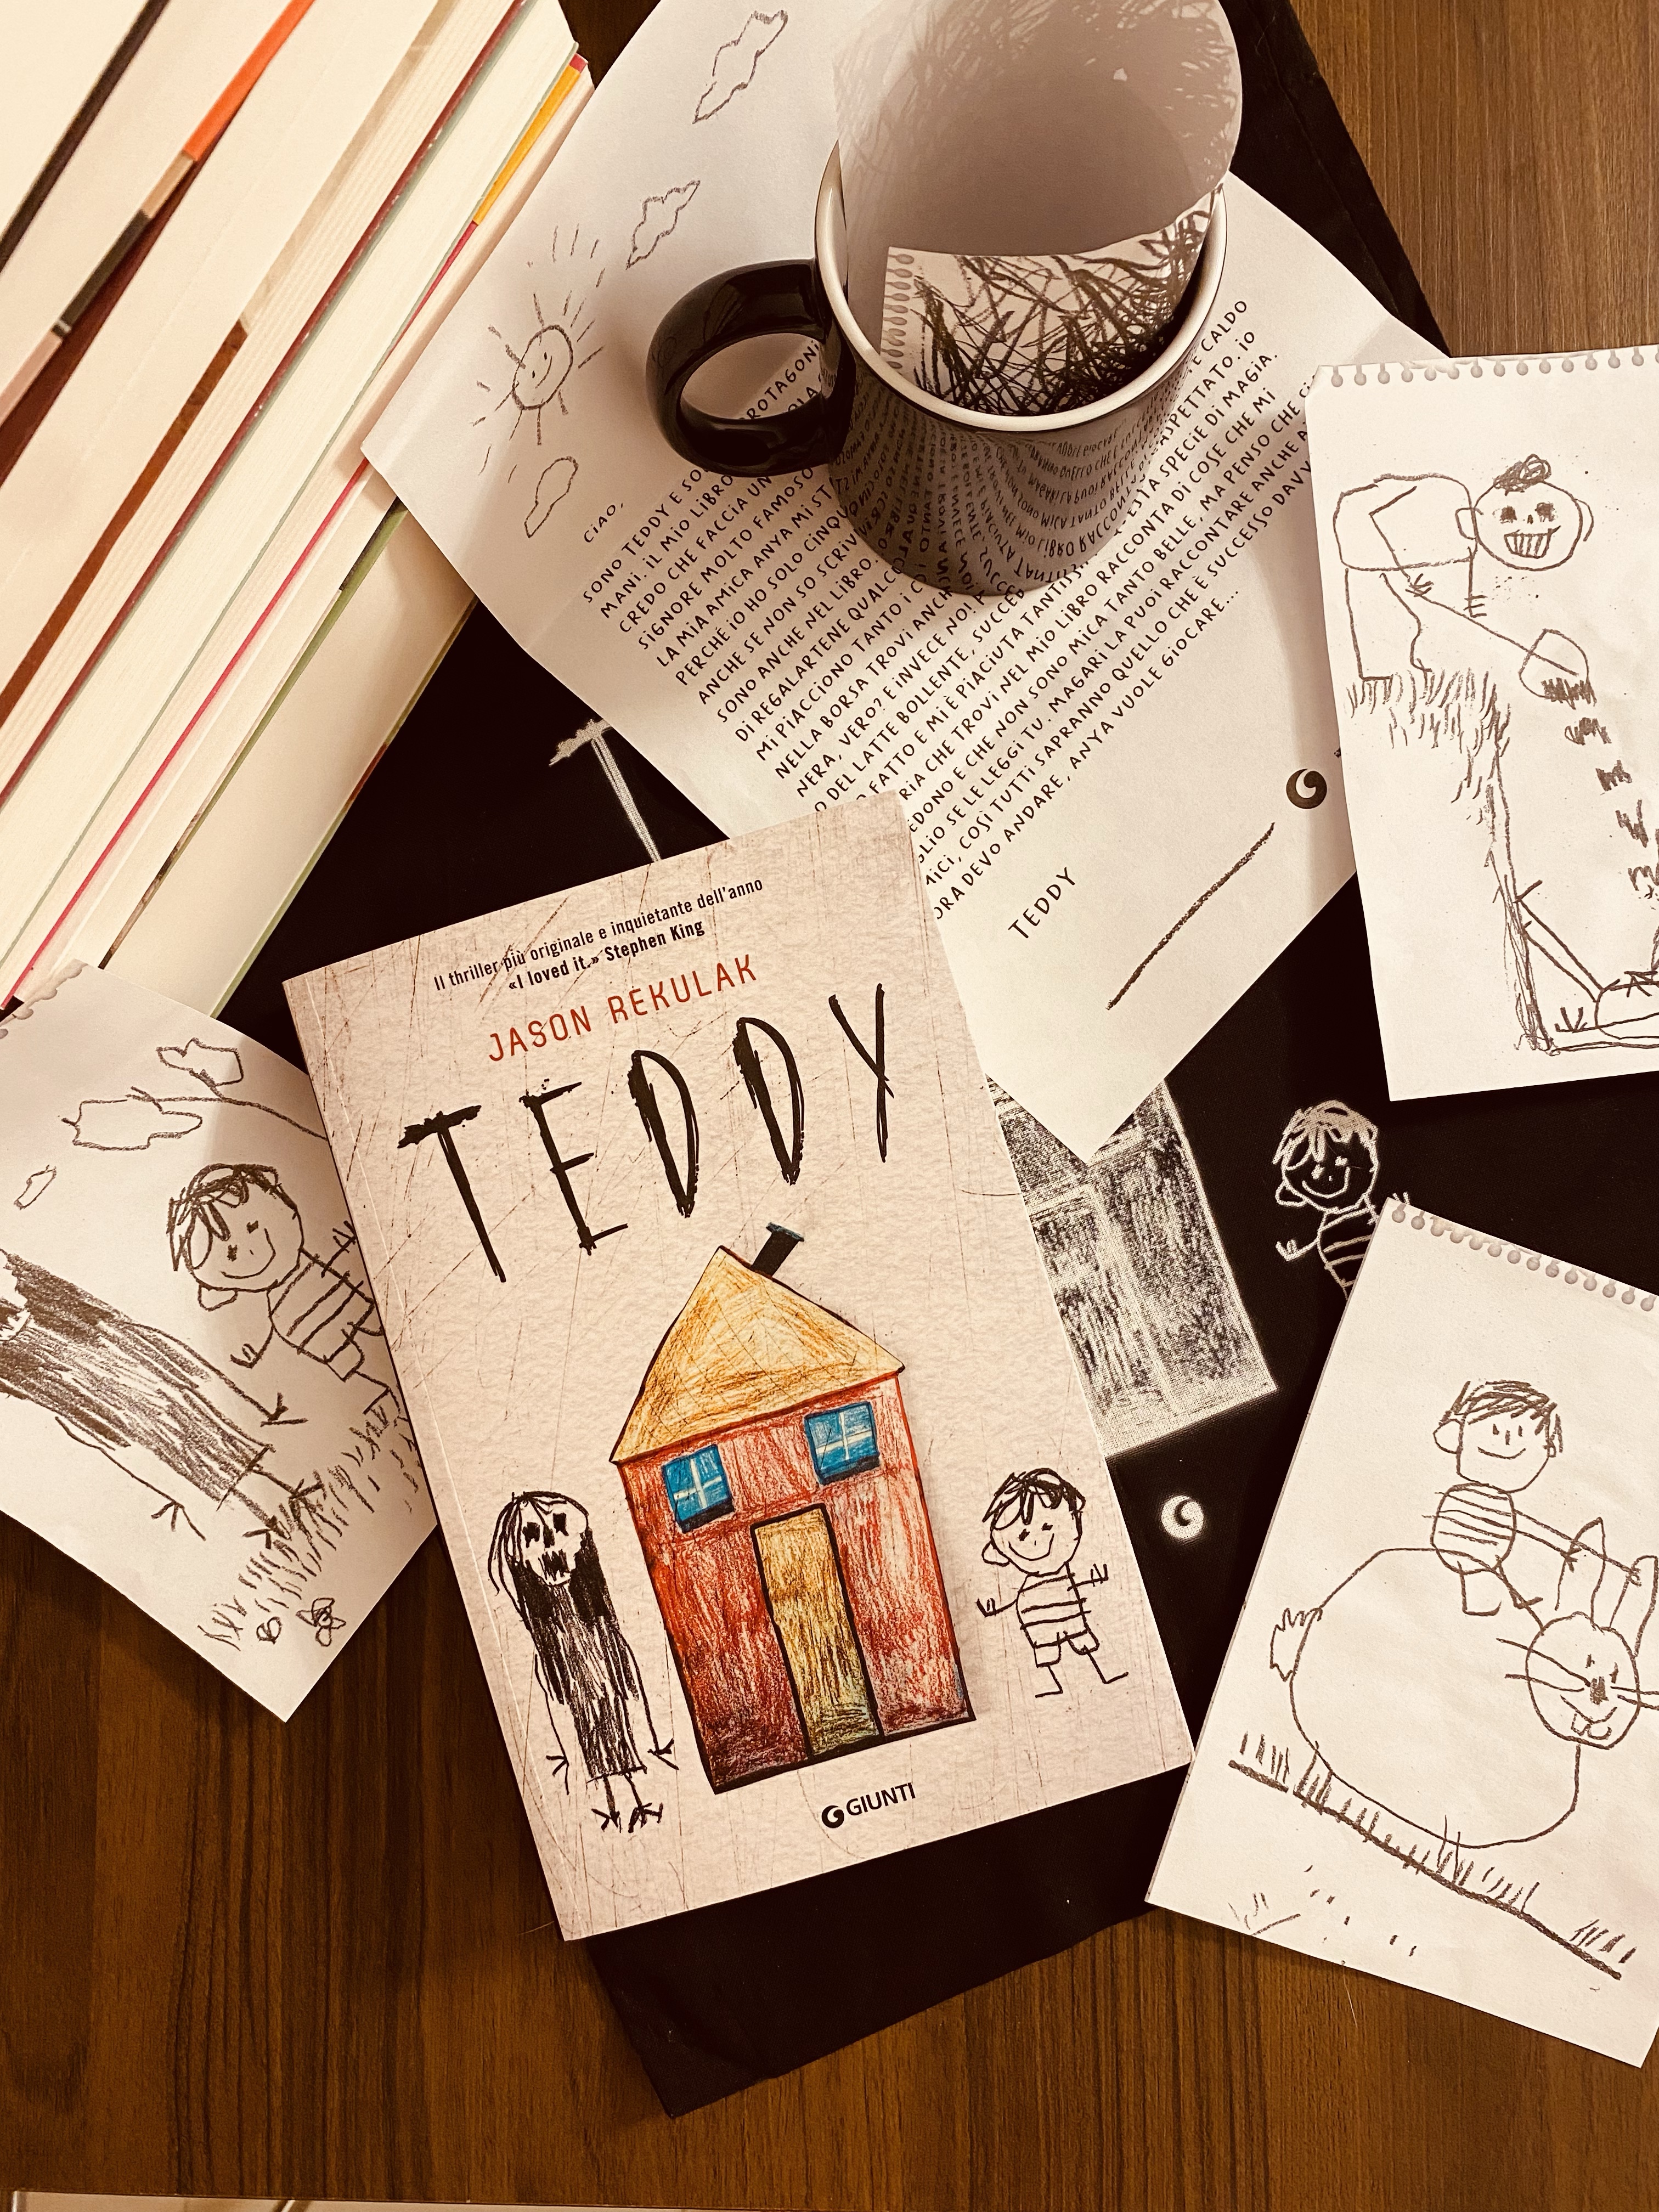 TEDDY di Jason Rekulak – Libri nell'aria